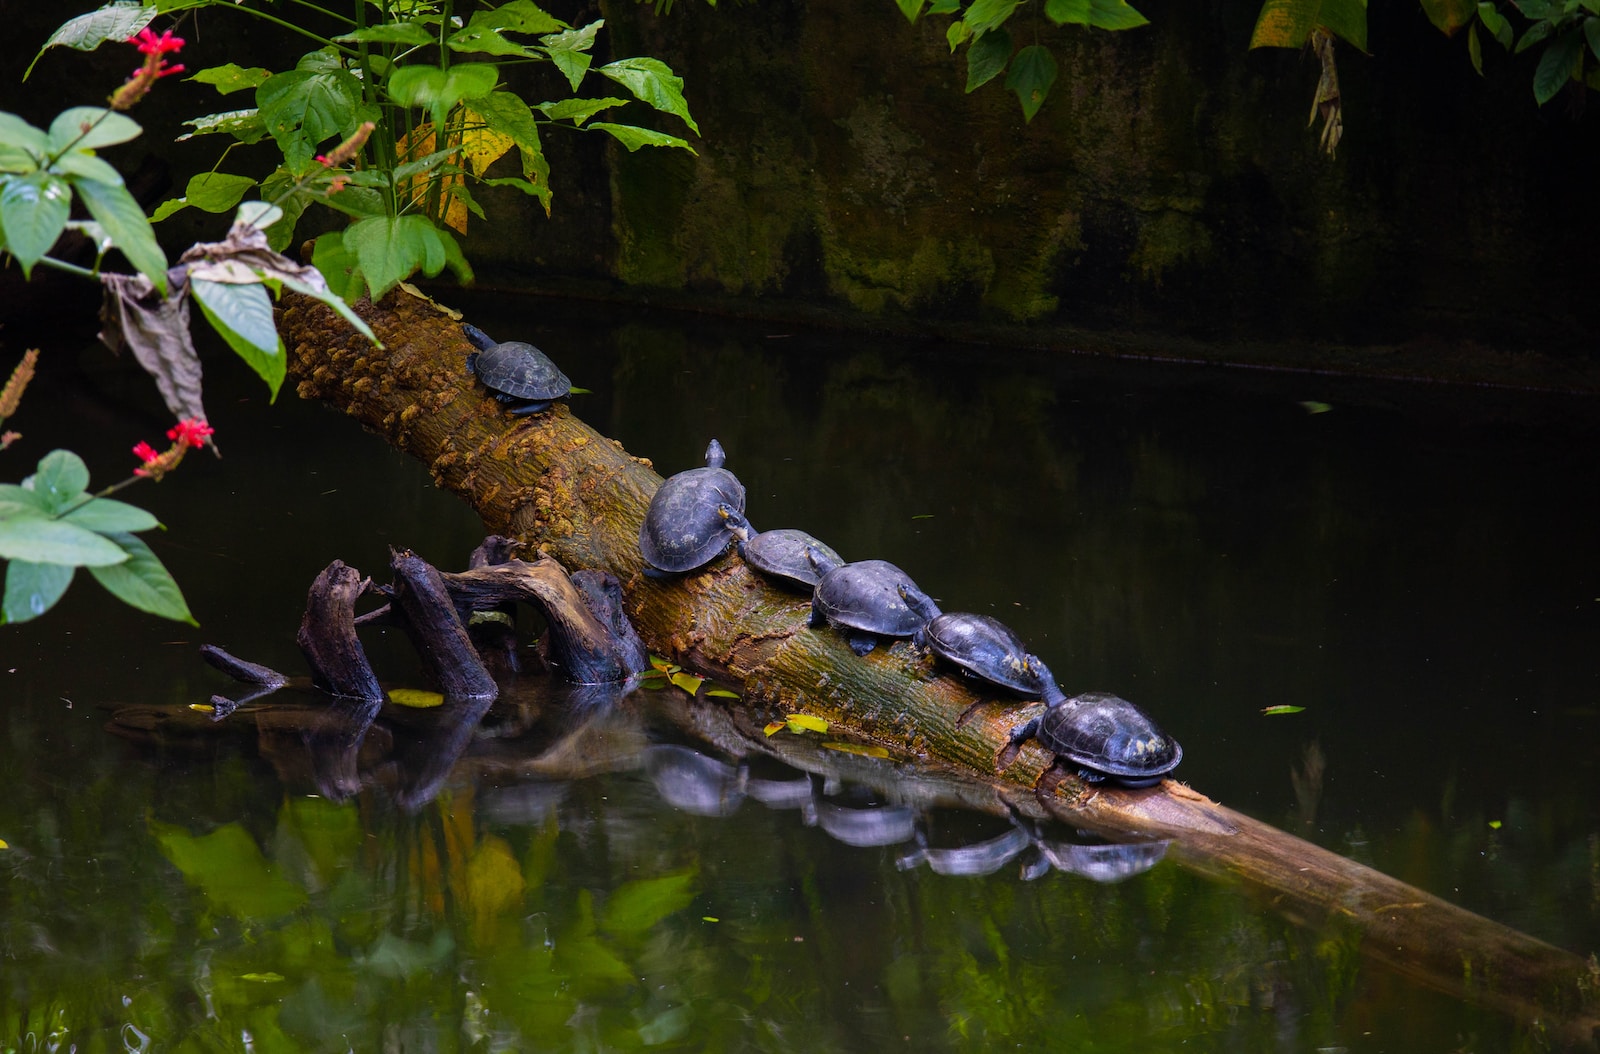 Schildkröten als Indikatoren für Umweltveränderungen: Wie sie uns helfen, die Natur im Wandel zu verstehen